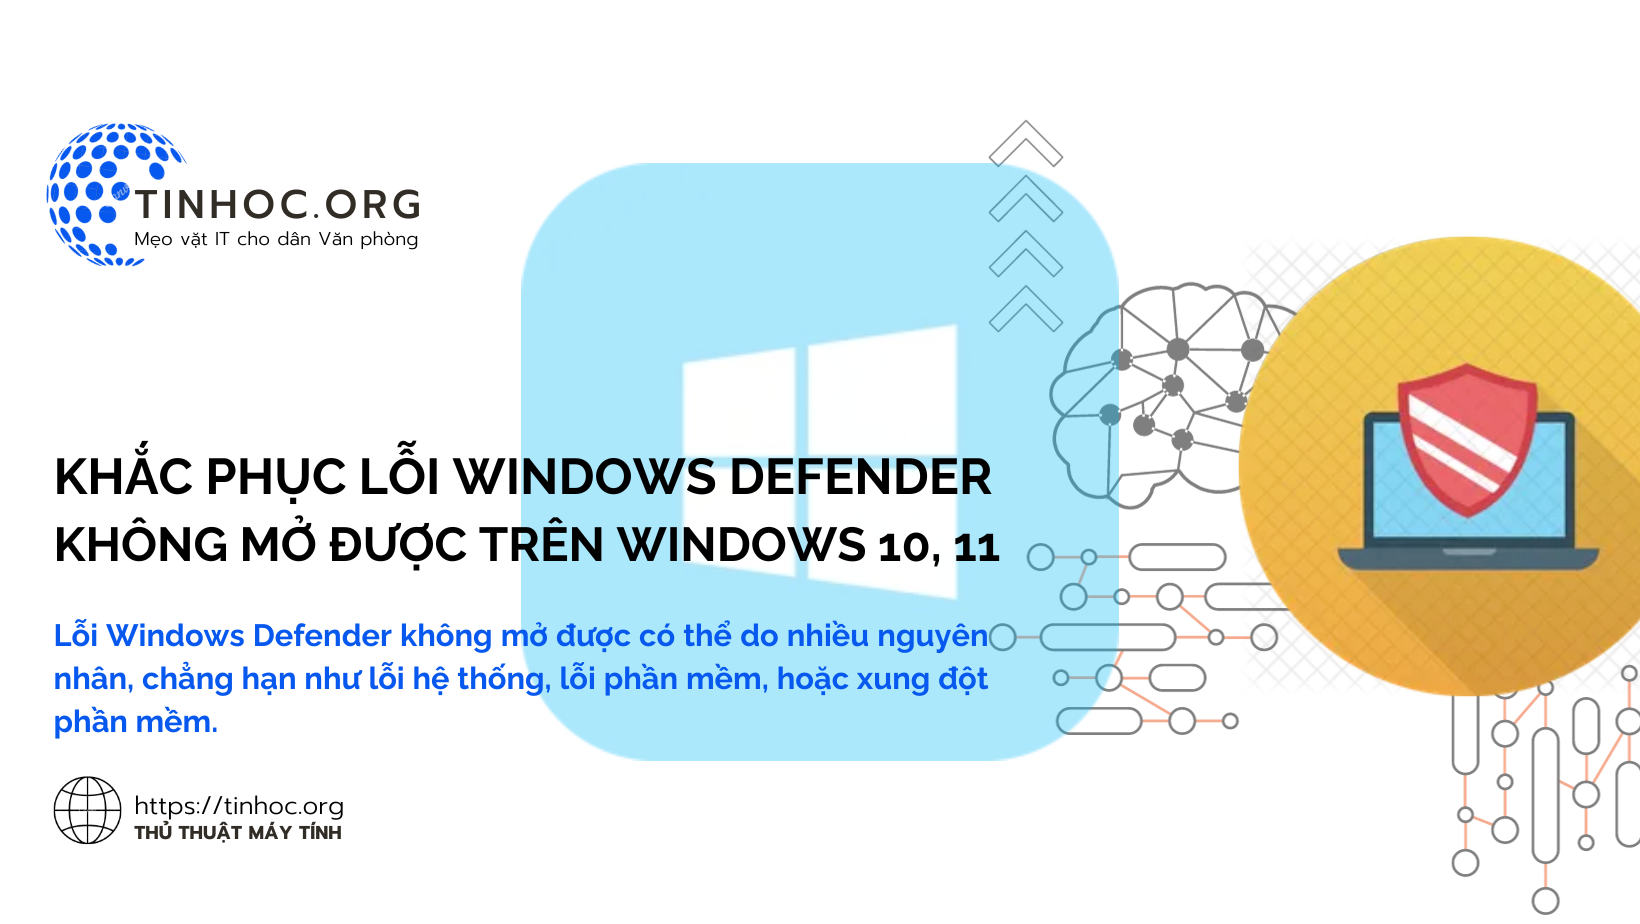 Lỗi Windows Defender không mở được có thể do nhiều nguyên nhân, chẳng hạn như lỗi hệ thống, lỗi phần mềm, hoặc xung đột phần mềm.